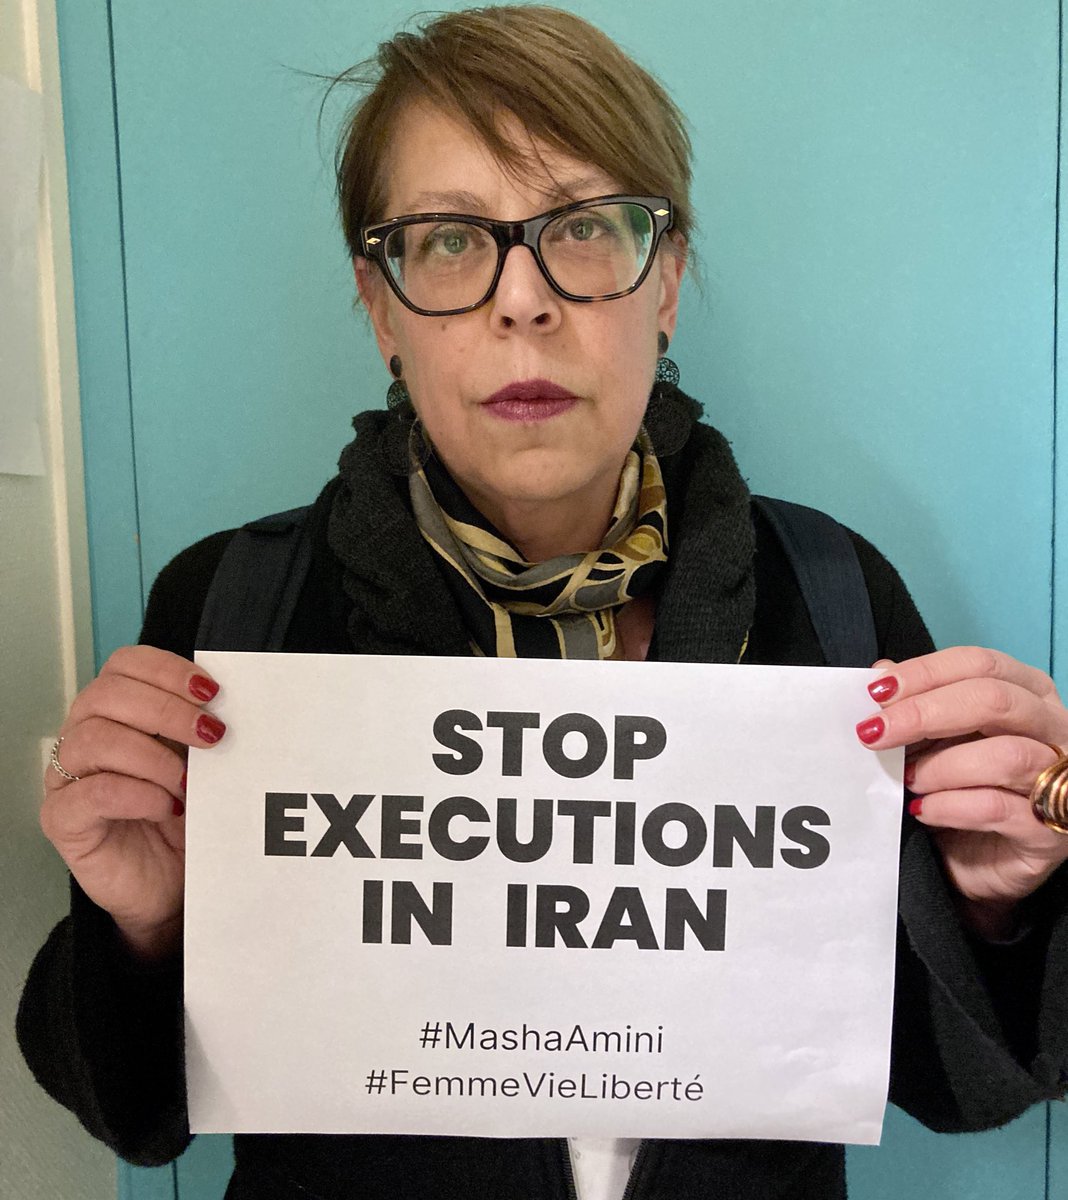 Les exécutions de militants et de militantes qui se mobilisent pour leurs droits se multiplient en #Iran. 

Il faut sauver les vies de 
#ShoaibMirbaluchzehiRigi 18 ans
#KambizKharot 20 ans #EbrahimNaroui 25 ans #MansourDahmardeh 22 ans
#JavadRouhi 35 ans 

Nathalie Leleu